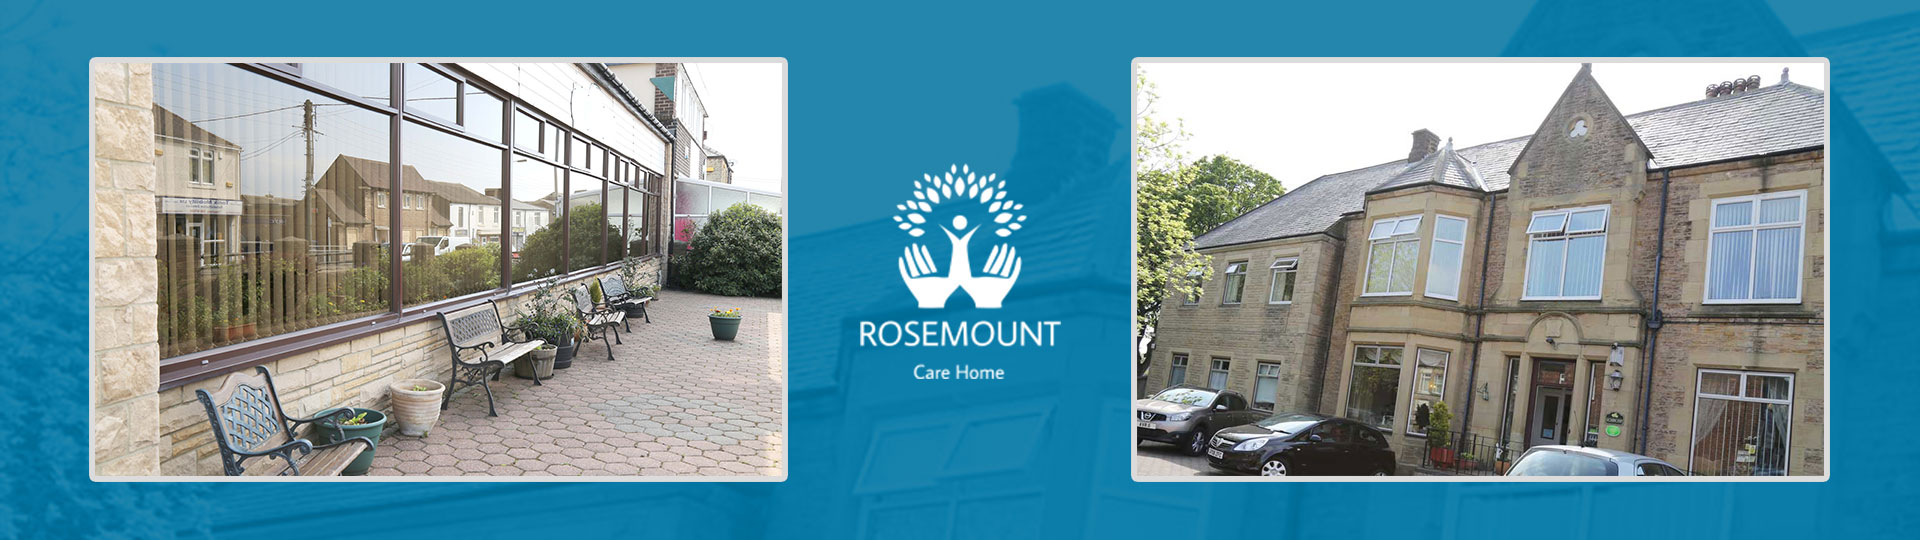 Rosemount-Home-ST0023